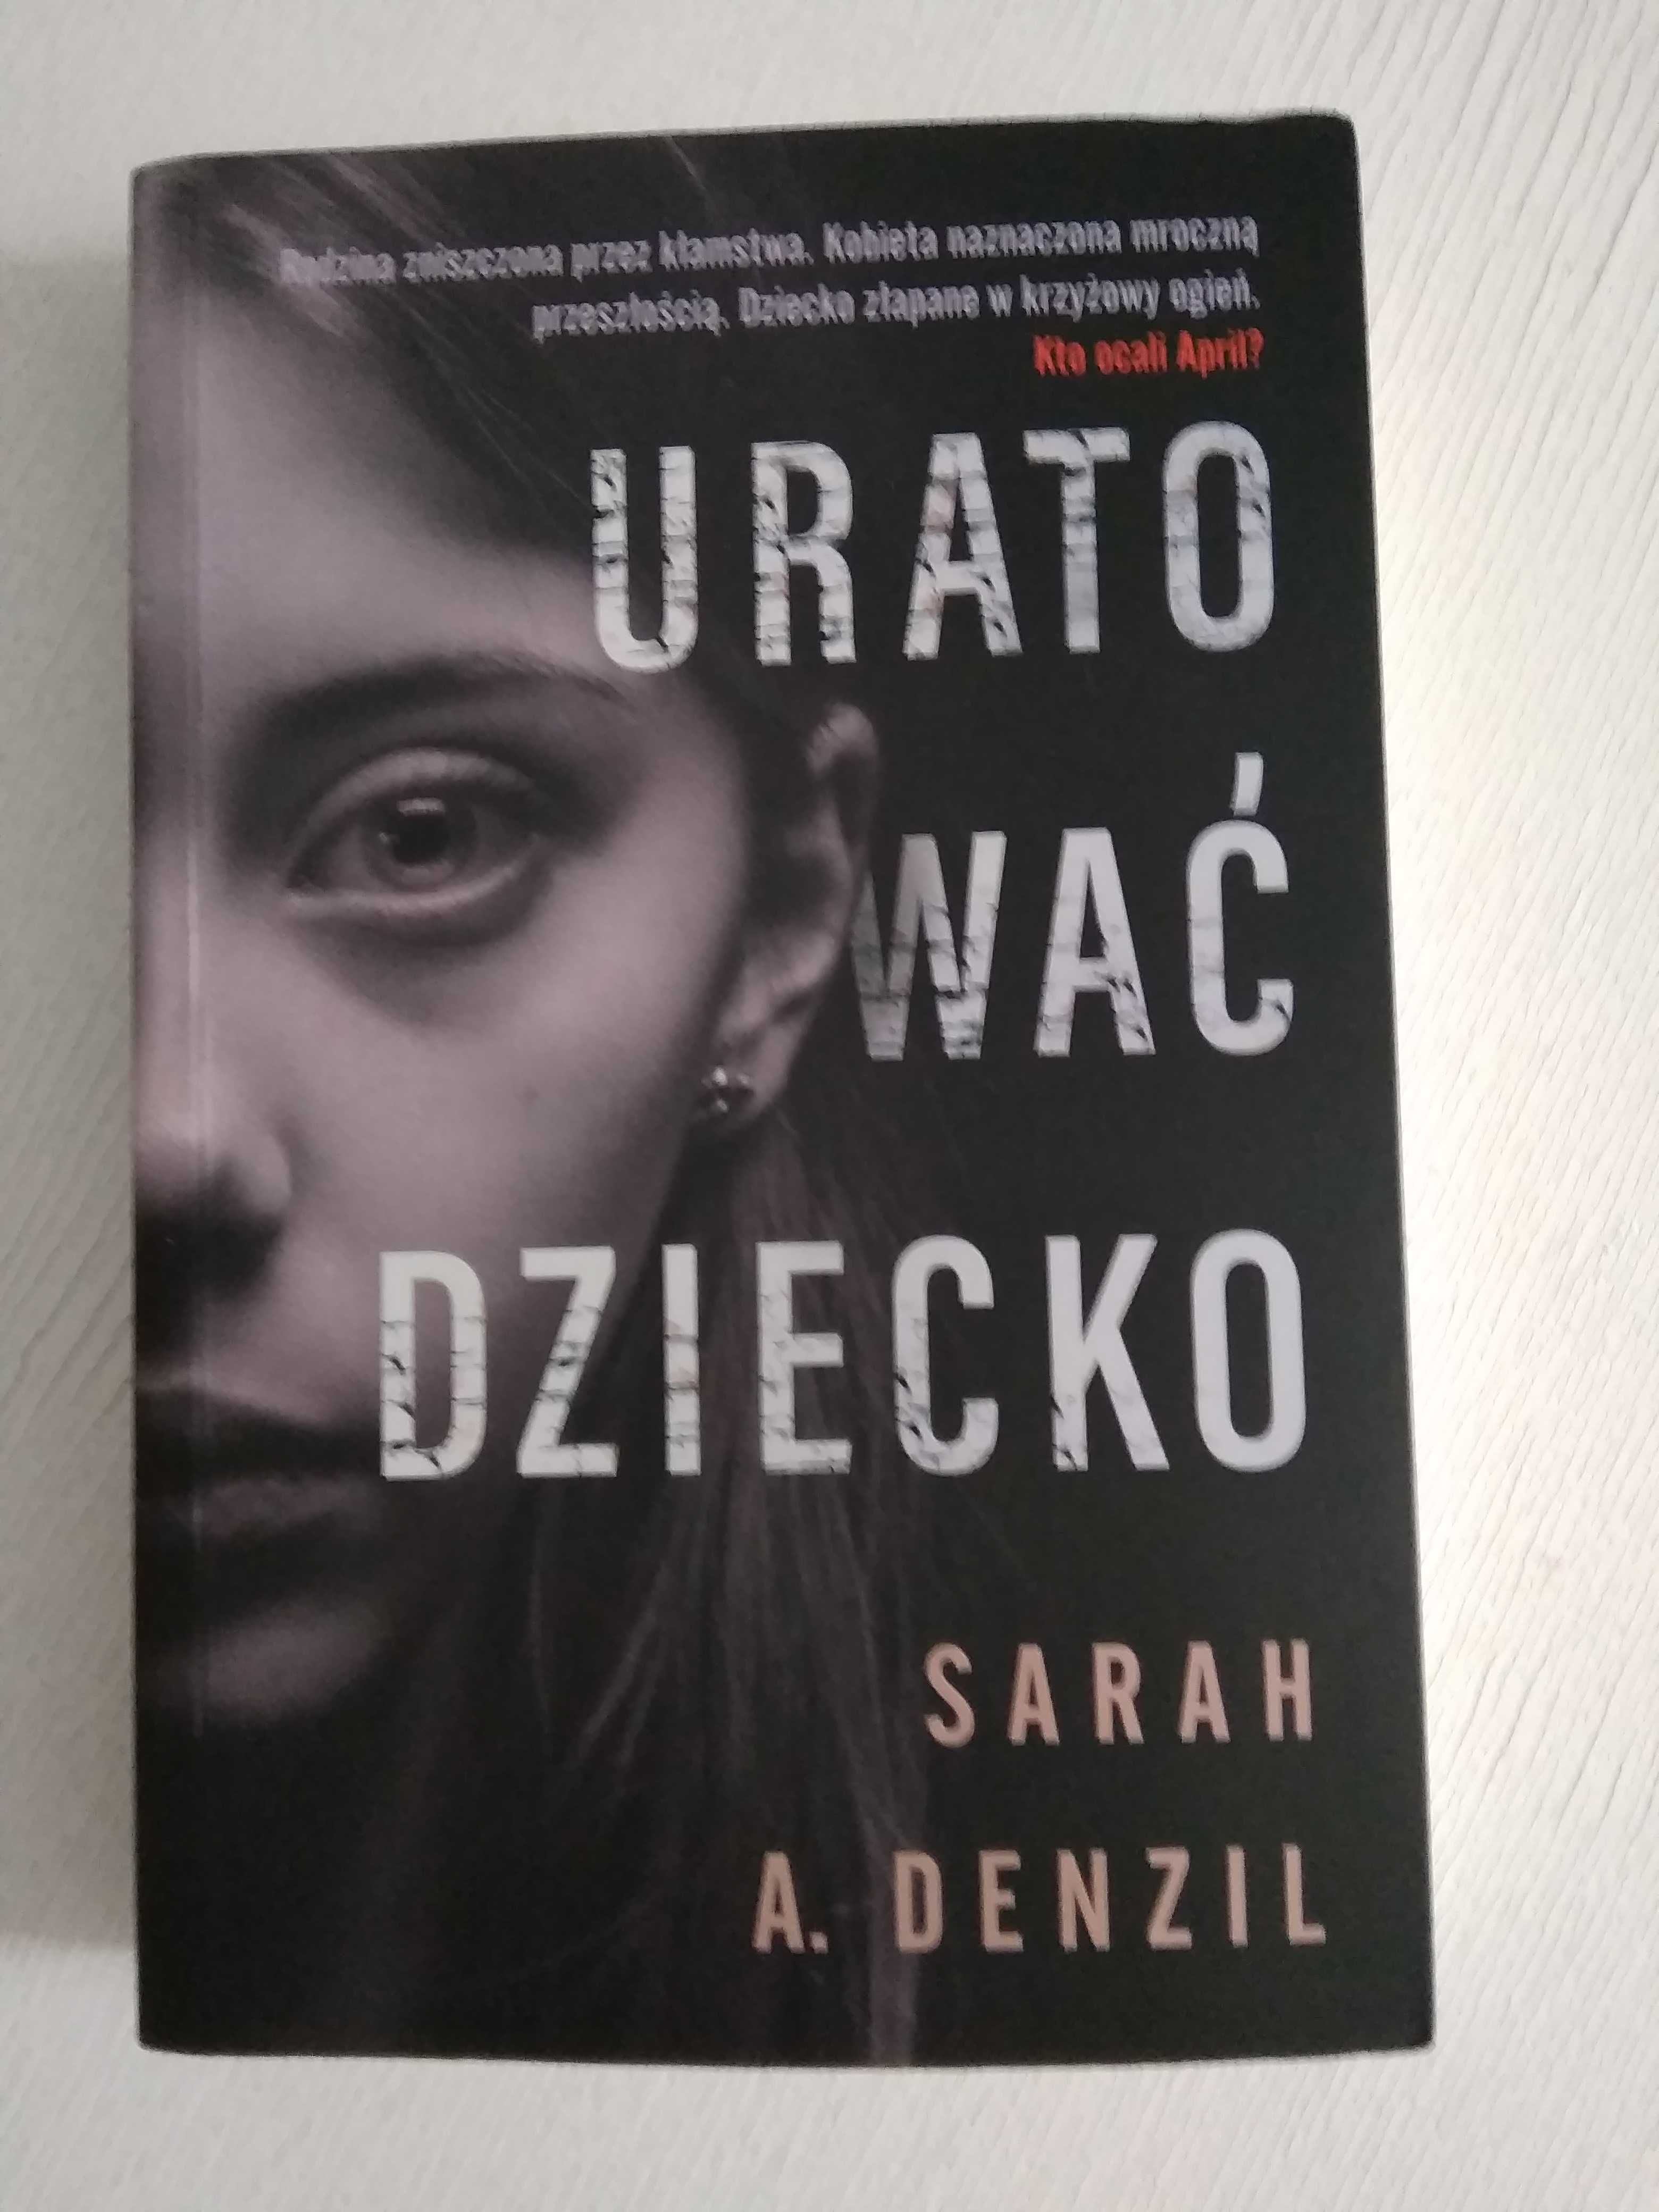 Sarah A. Denzil "Uratować dziecko" Prawie 300 stron dobrego czytania!